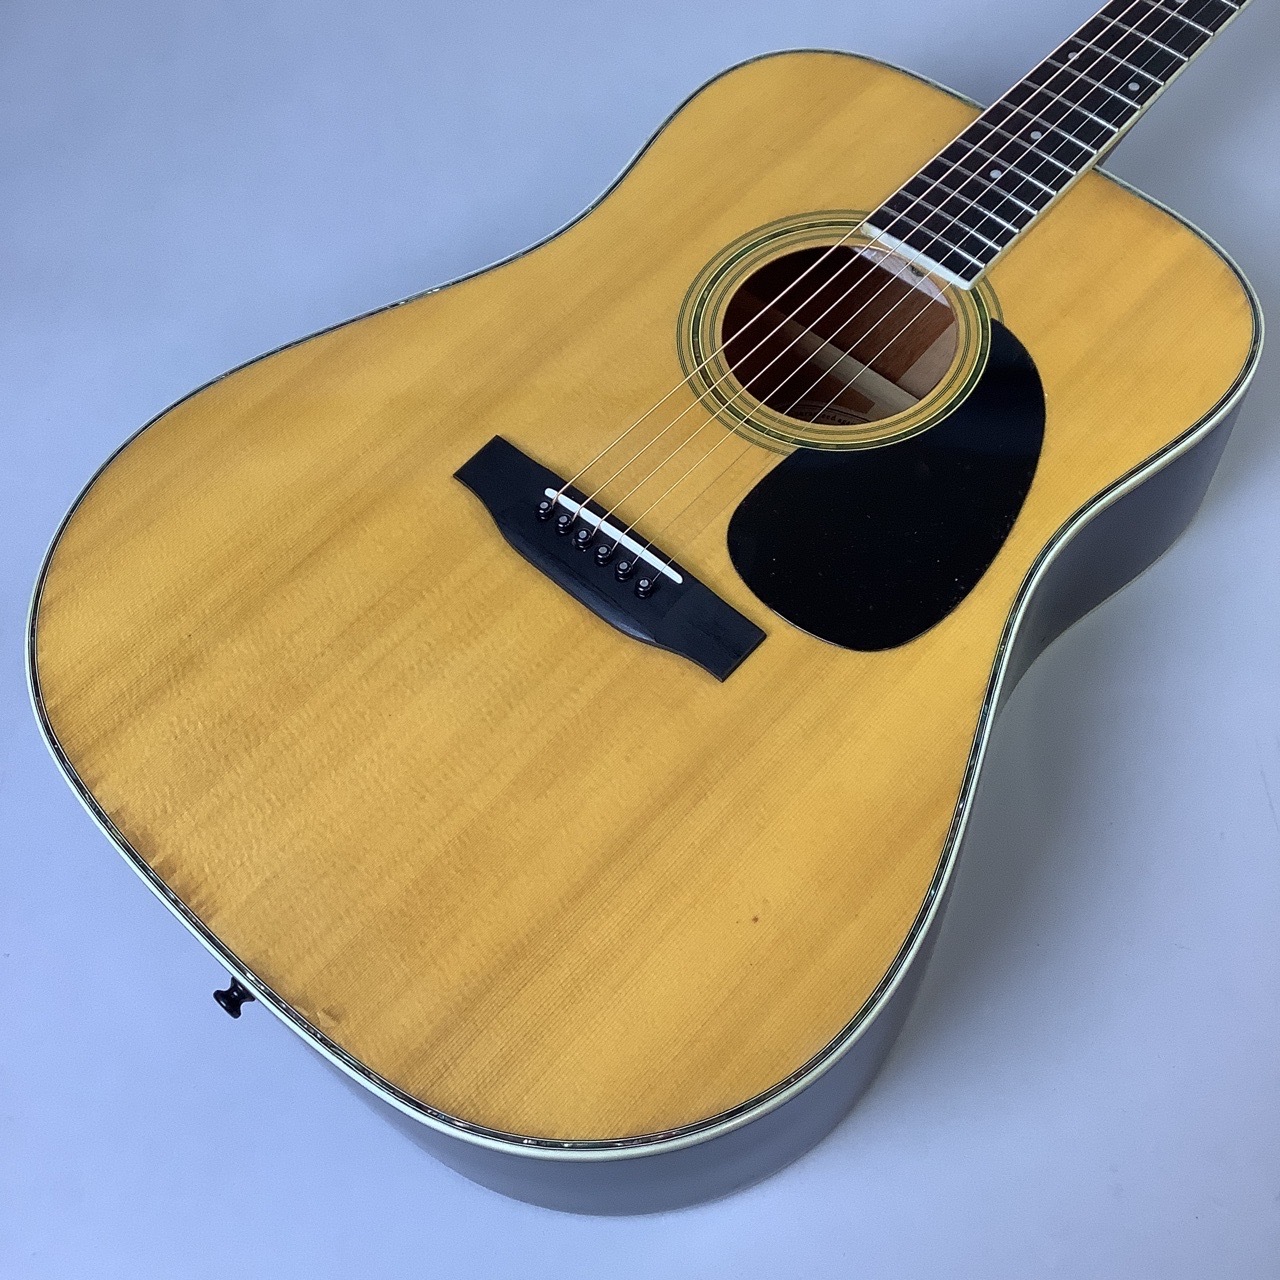 Morris W-30 モーリス アコースティックギター シリアルNo.605025